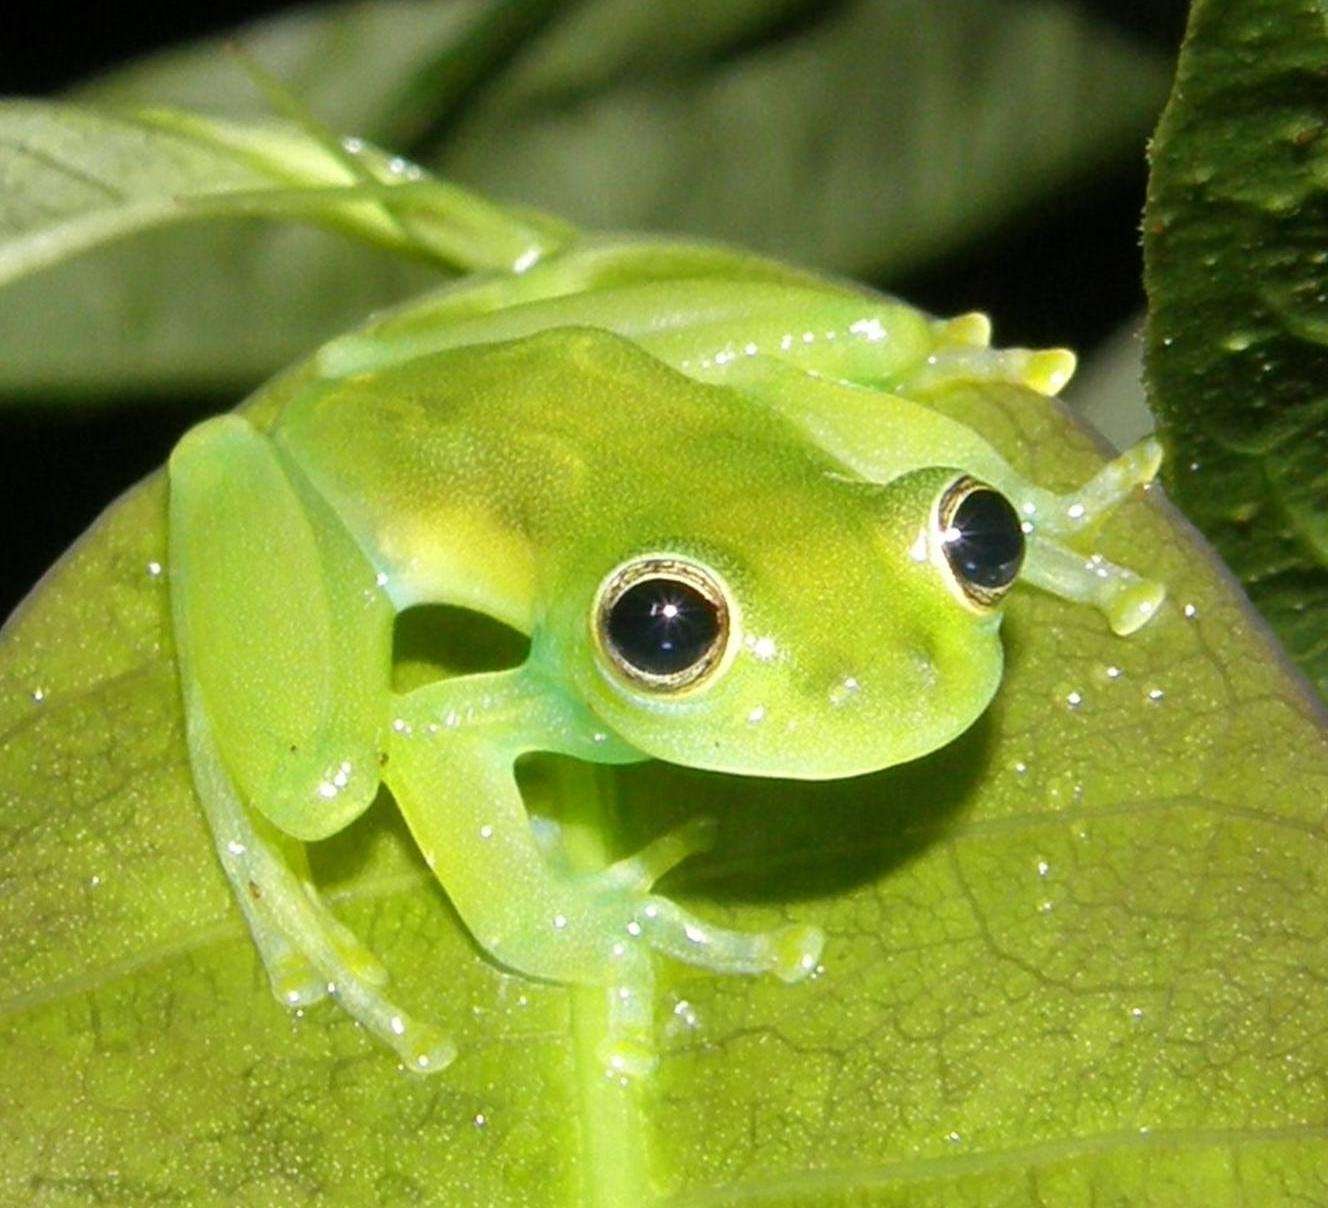 Какие бывают лягушки и жабы фото и названия